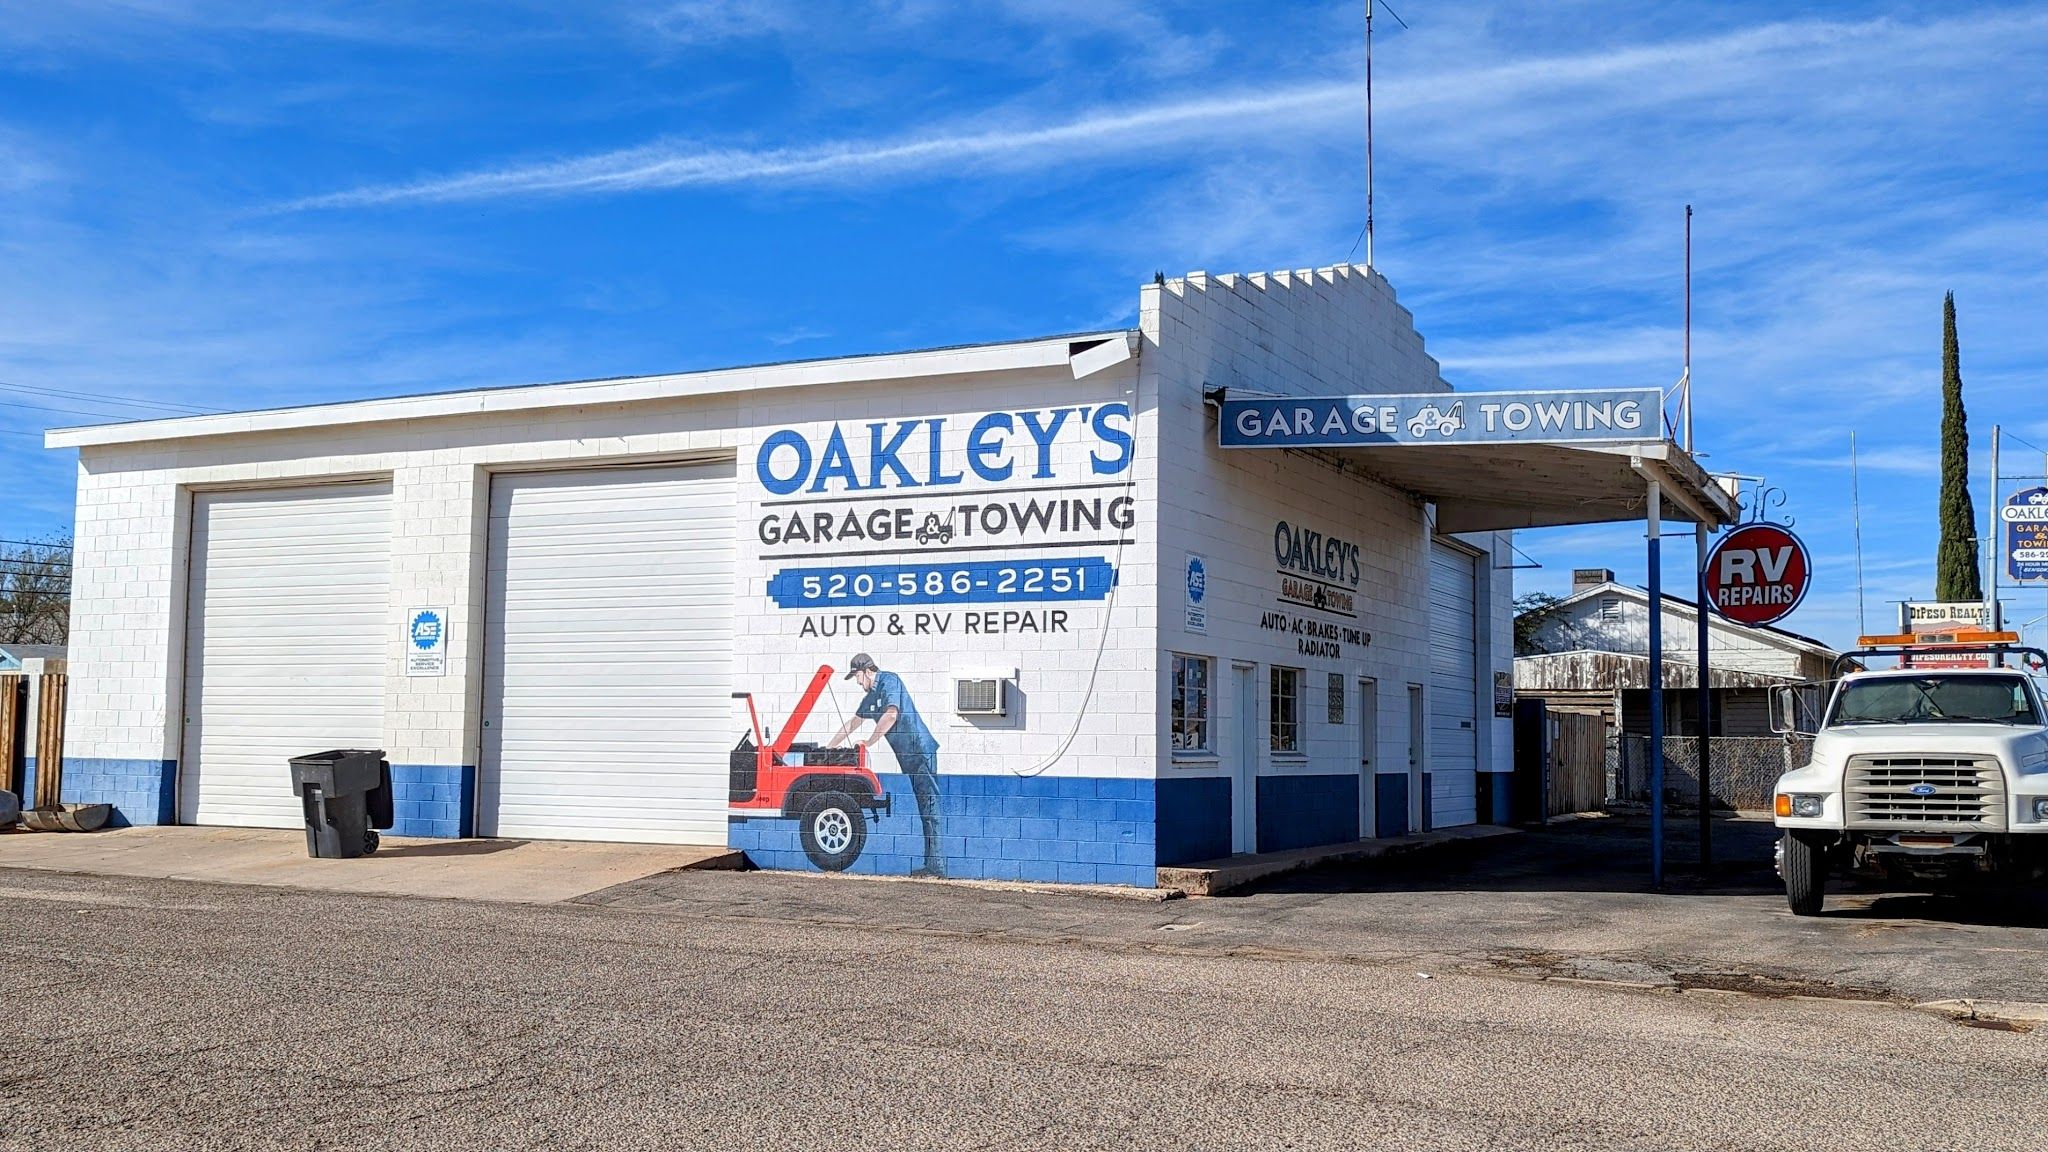 Oakley's Garage & Towing